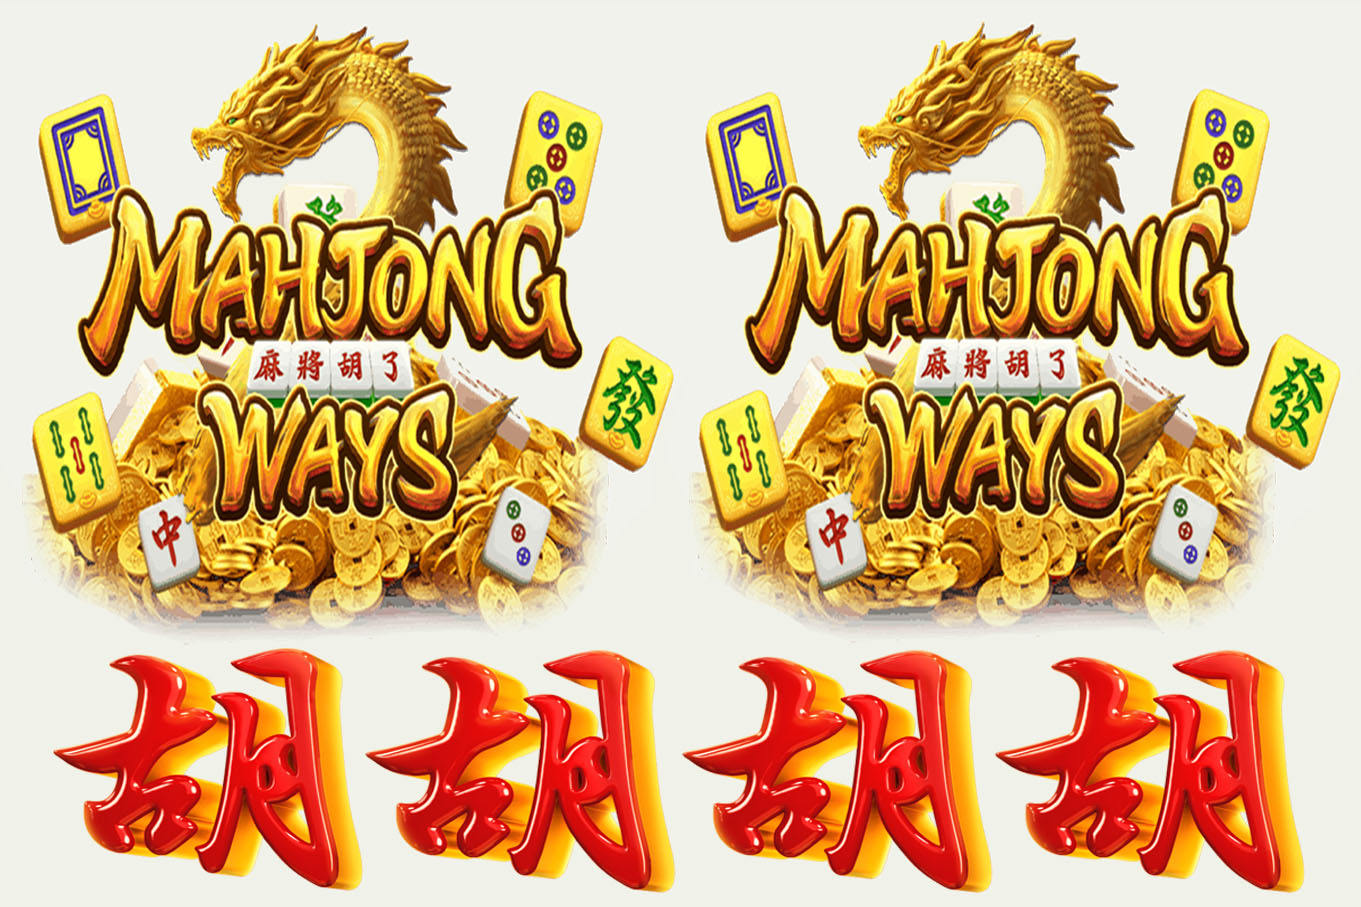 Stiker lembaran sudah di cutting uk 32 x 48 gambar mahjong ways | Lazada Indonesia